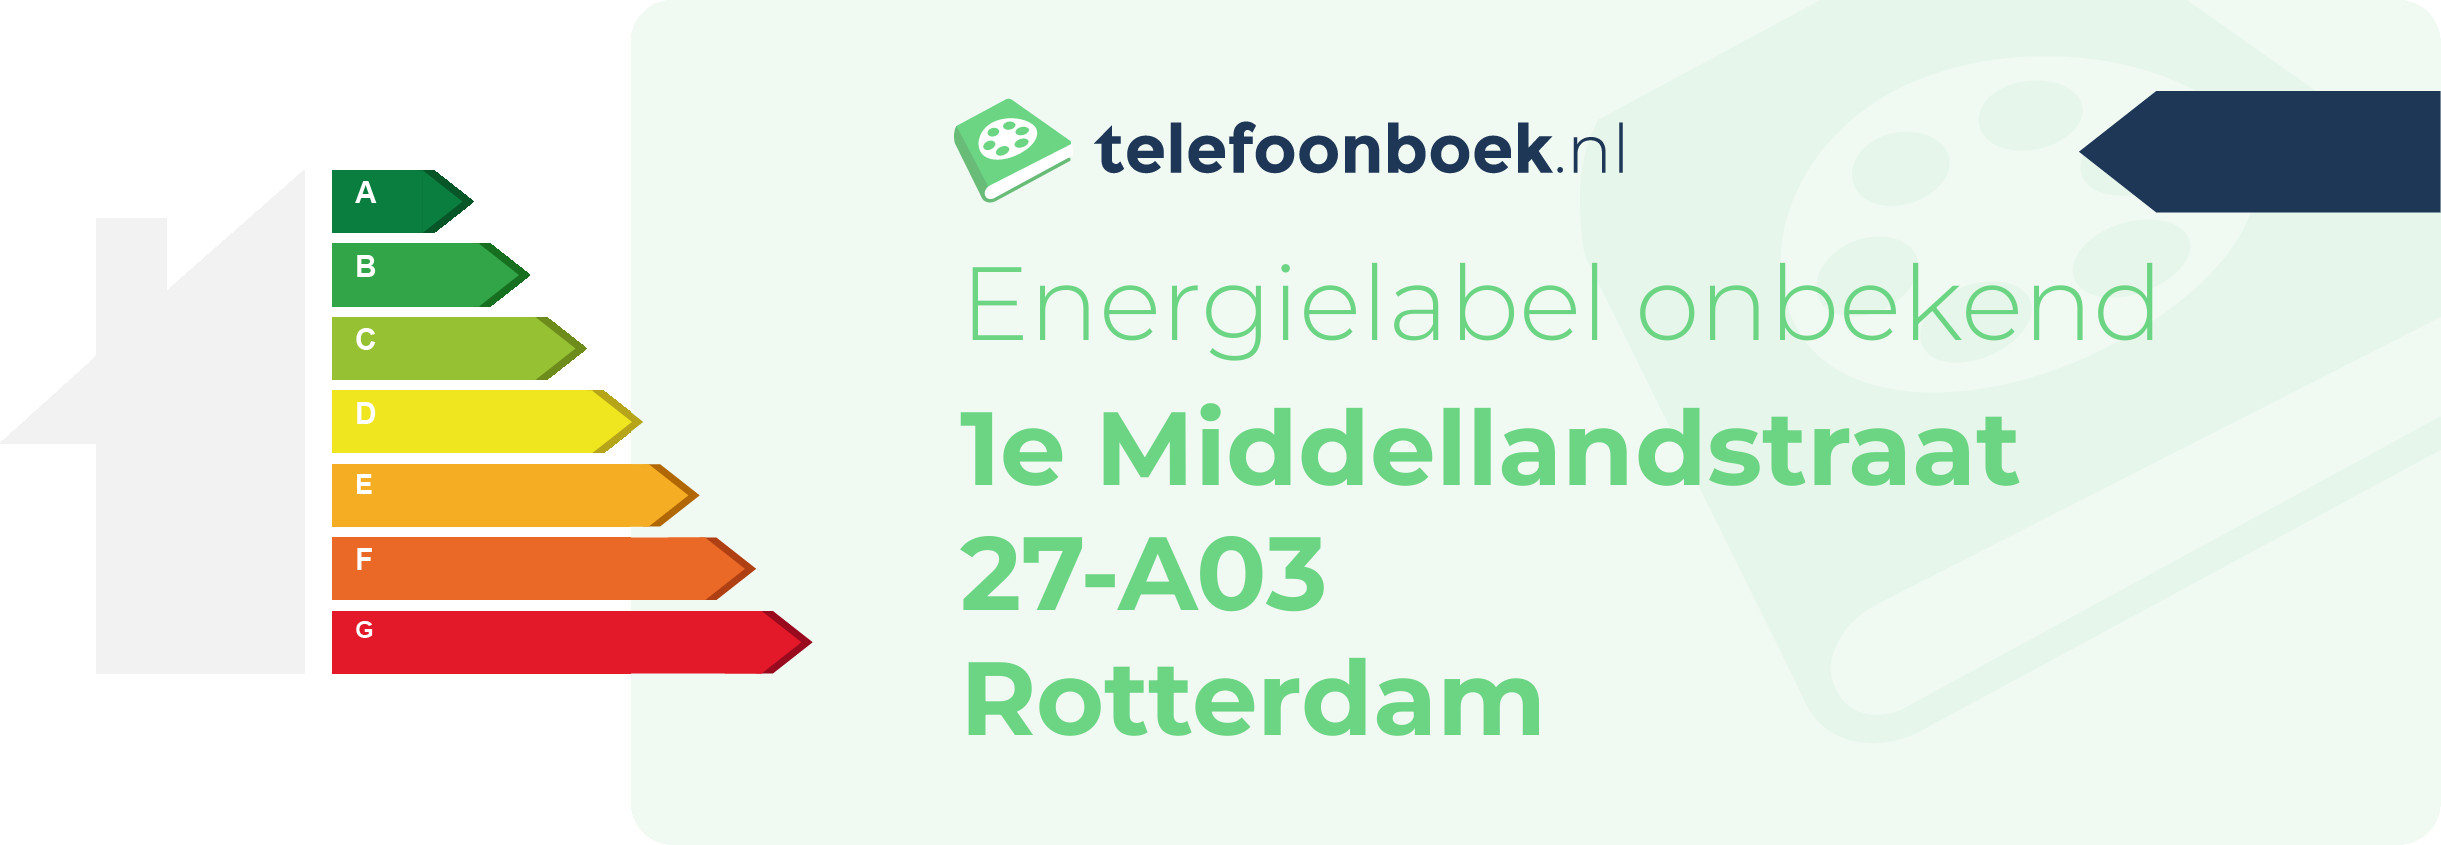 Energielabel 1e Middellandstraat 27-A03 Rotterdam